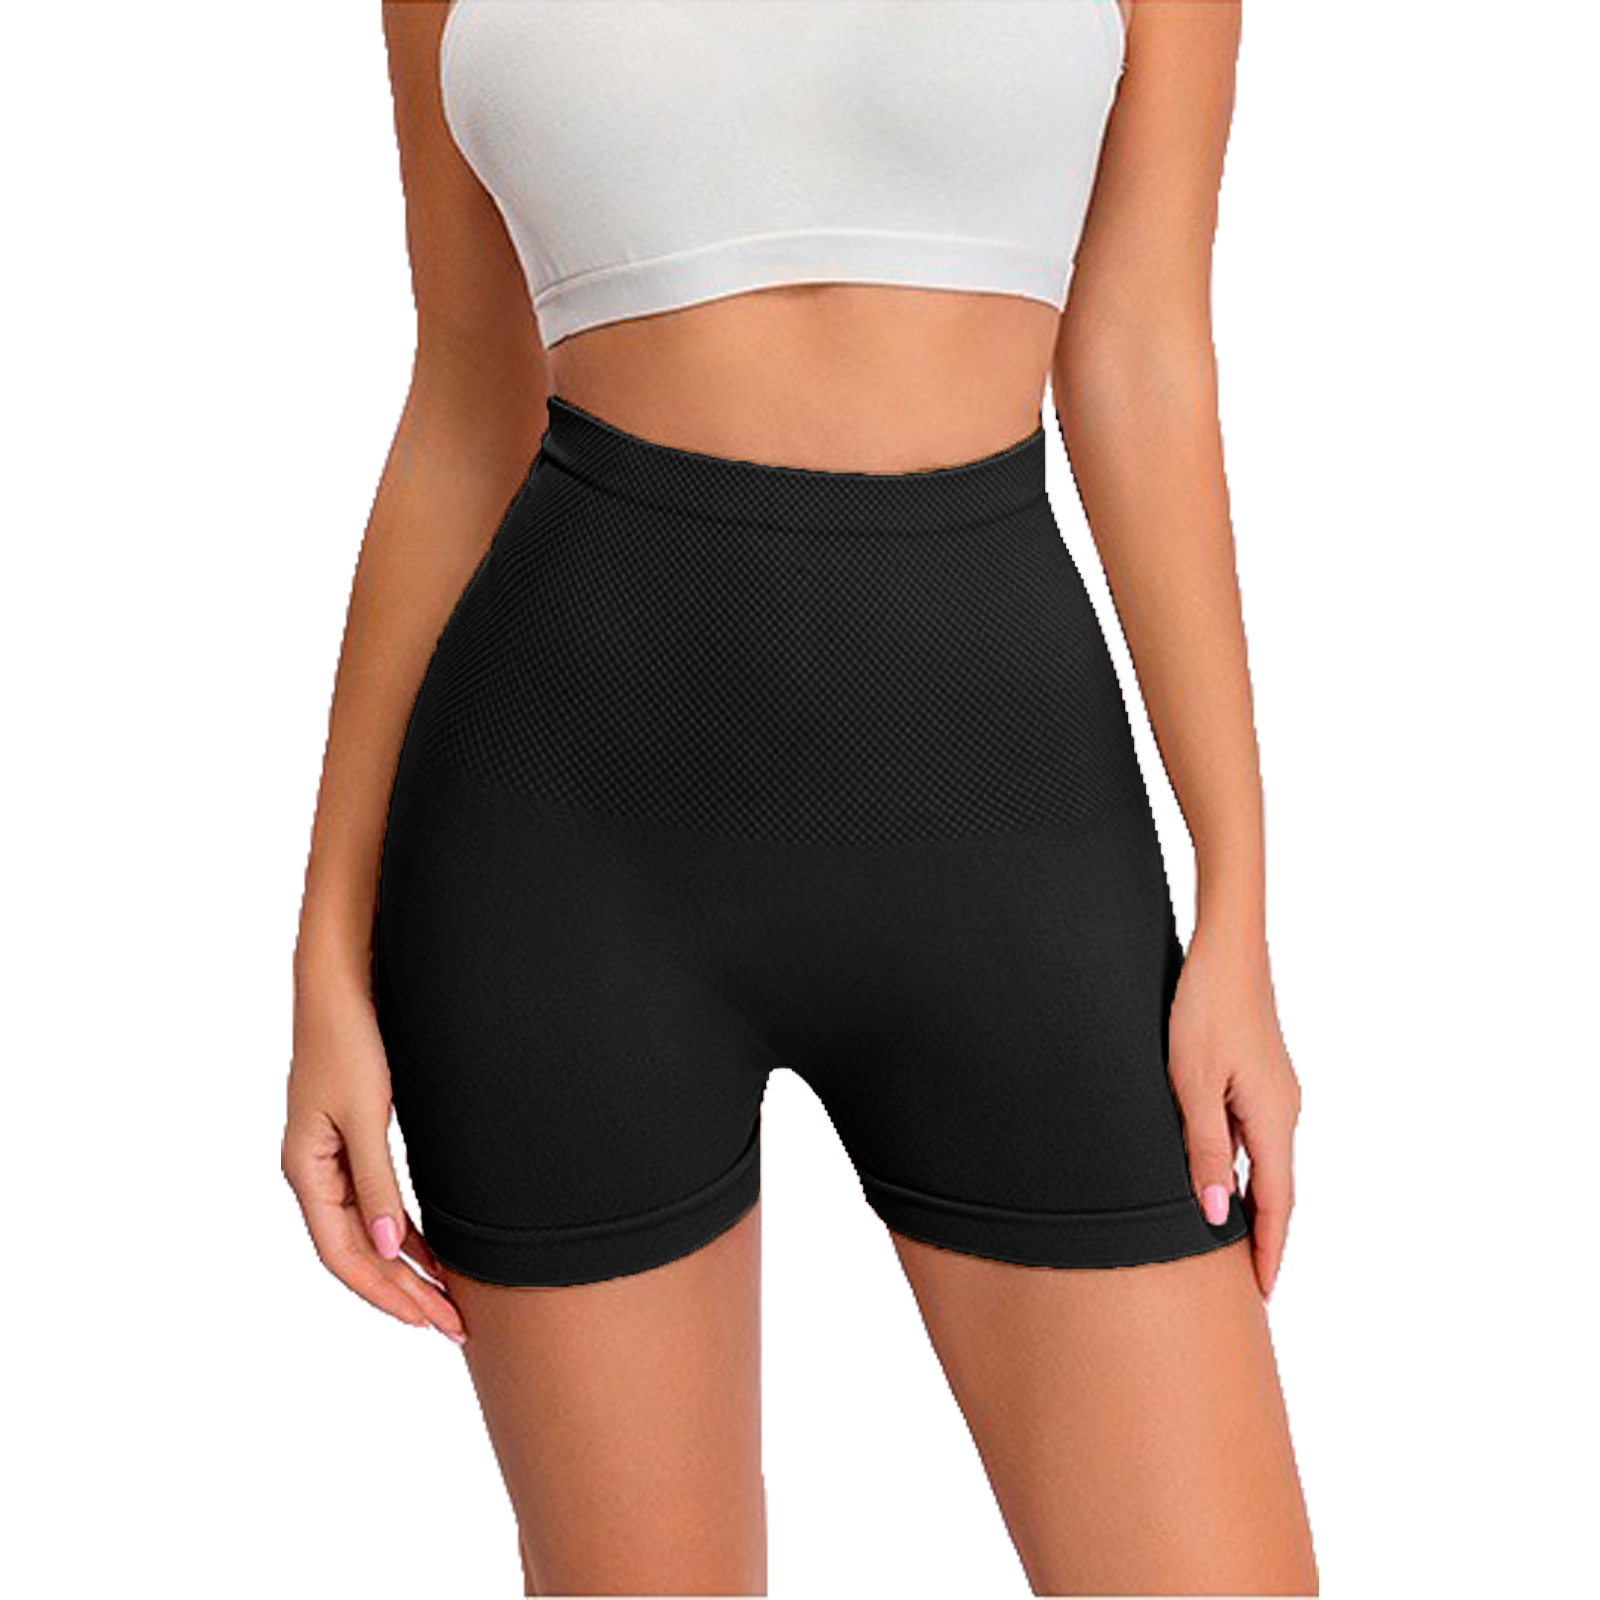 Pantalón deportivo mujer pretina ancha slim fit - TRICOT